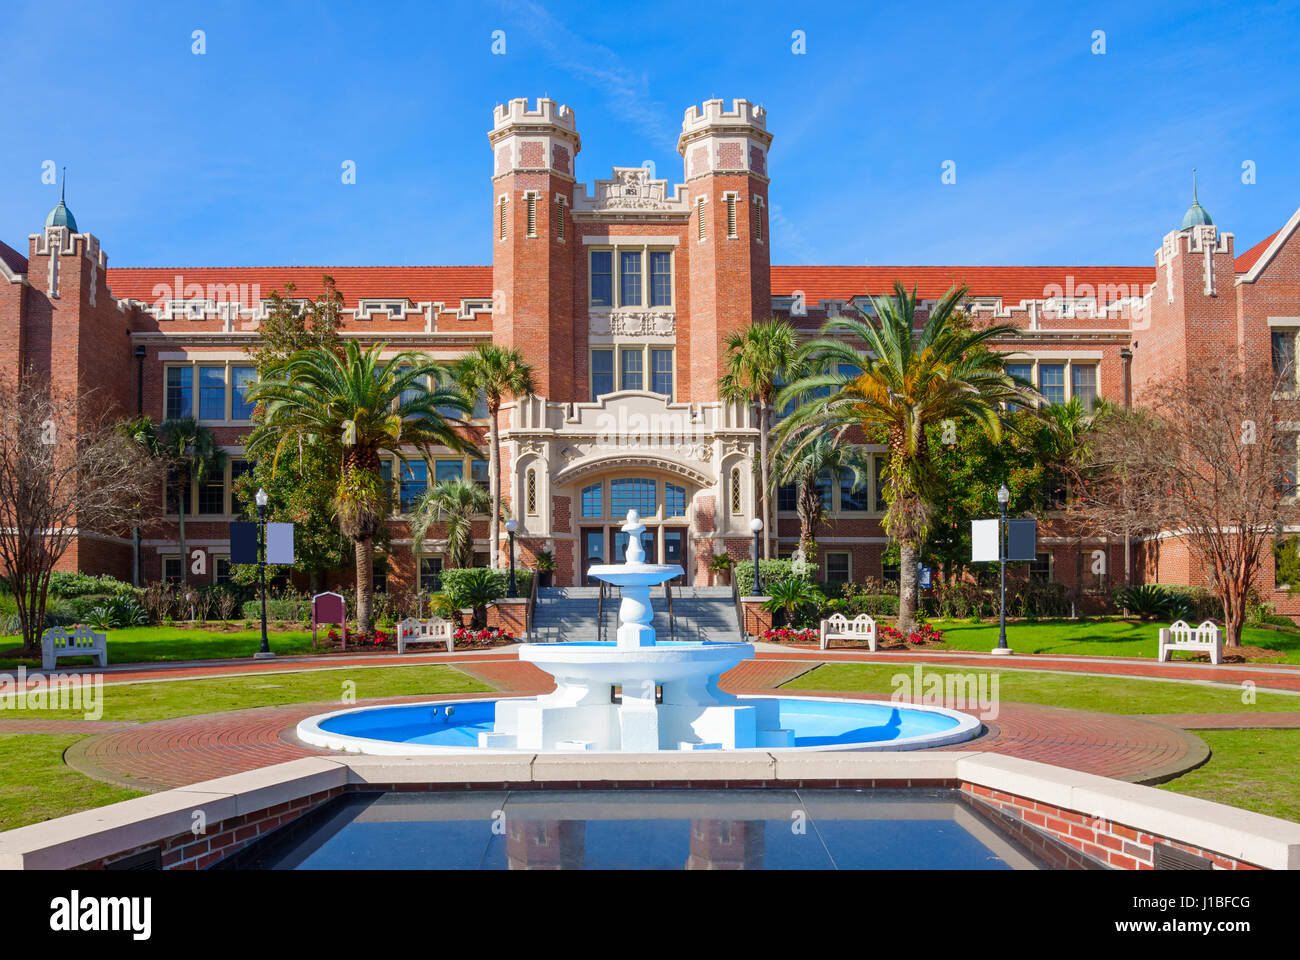 Westcott s'appuyant sur le campus de l'Université d'État de Floride à Tallahassee, Floride, USA. Florida State U est une université publique. Banque D'Images